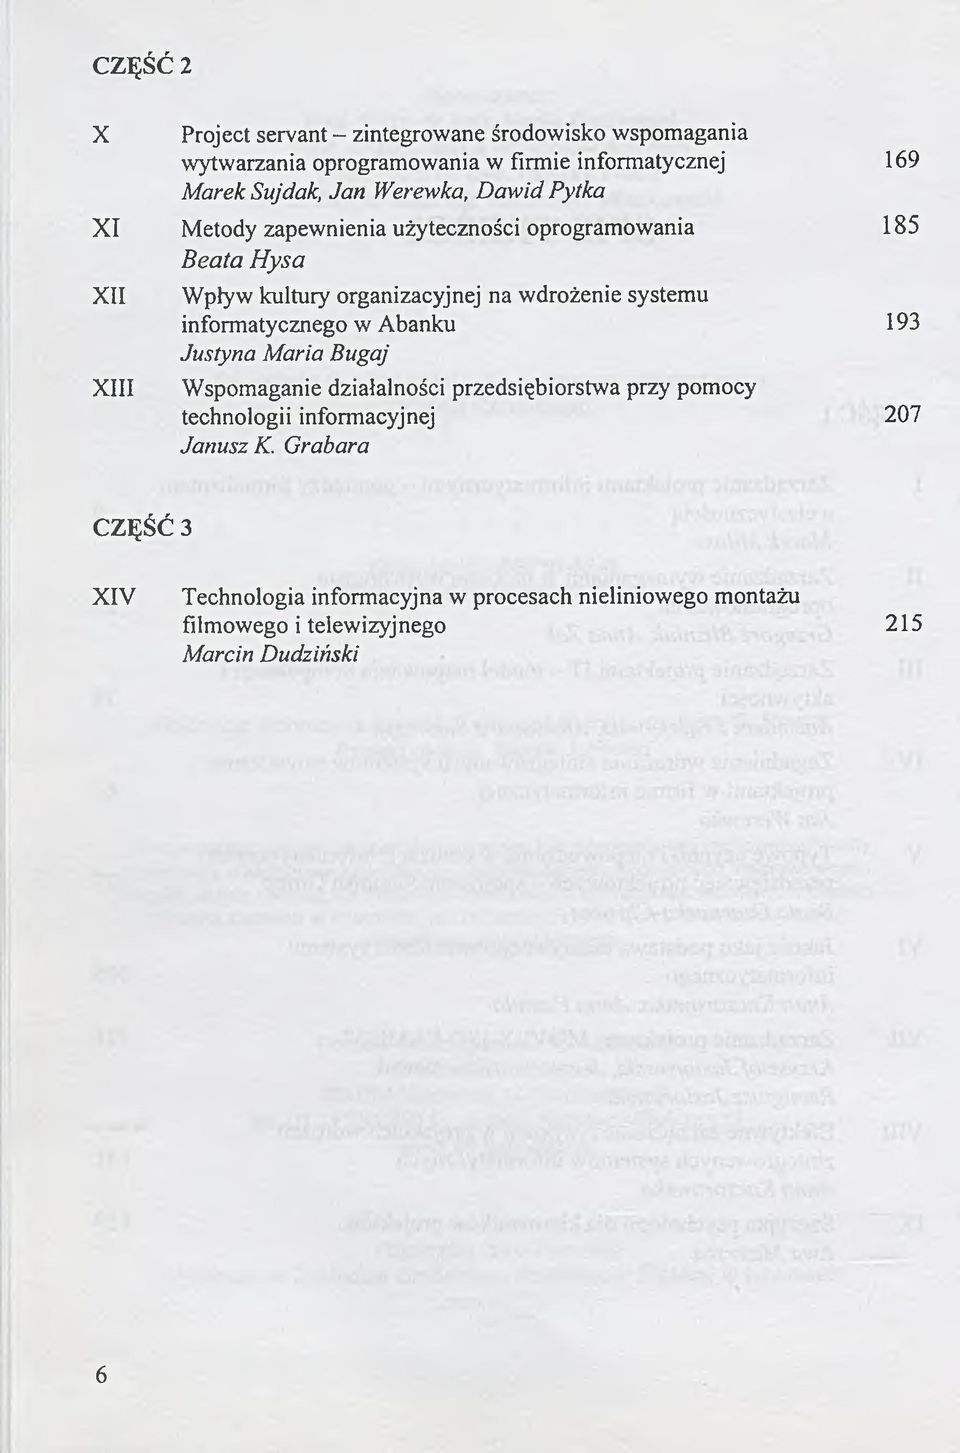 systemu informatycznego w Abanku 193 Justyna Maria Bugaj Wspomaganie działalności przedsiębiorstwa przy pomocy technologii informacyjnej